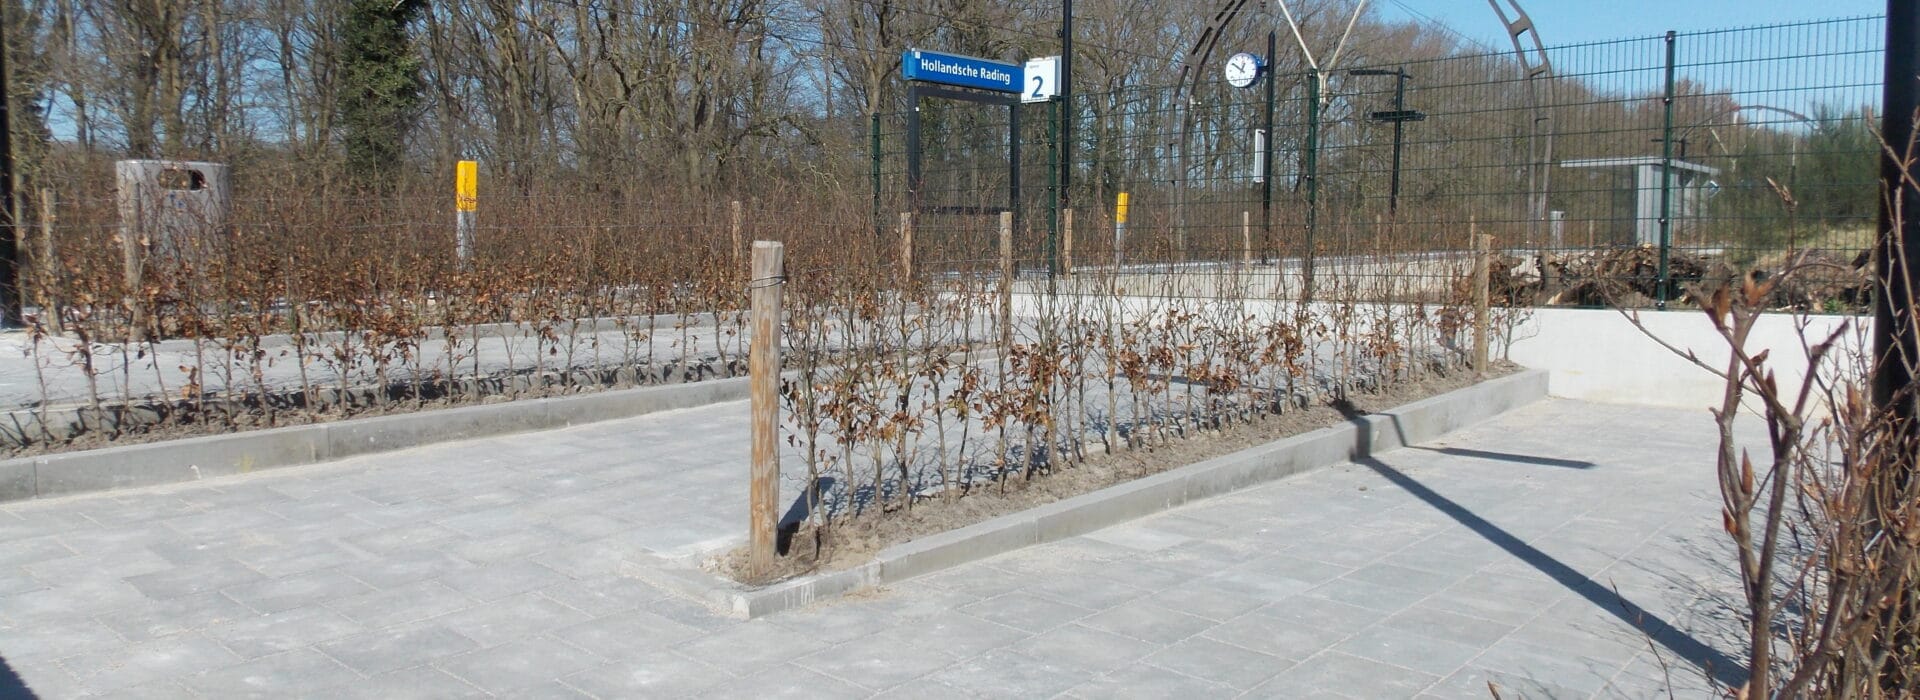 Bosch Beton - Keerwanden voor opgang invalide reizigers station Hollandsche Rading